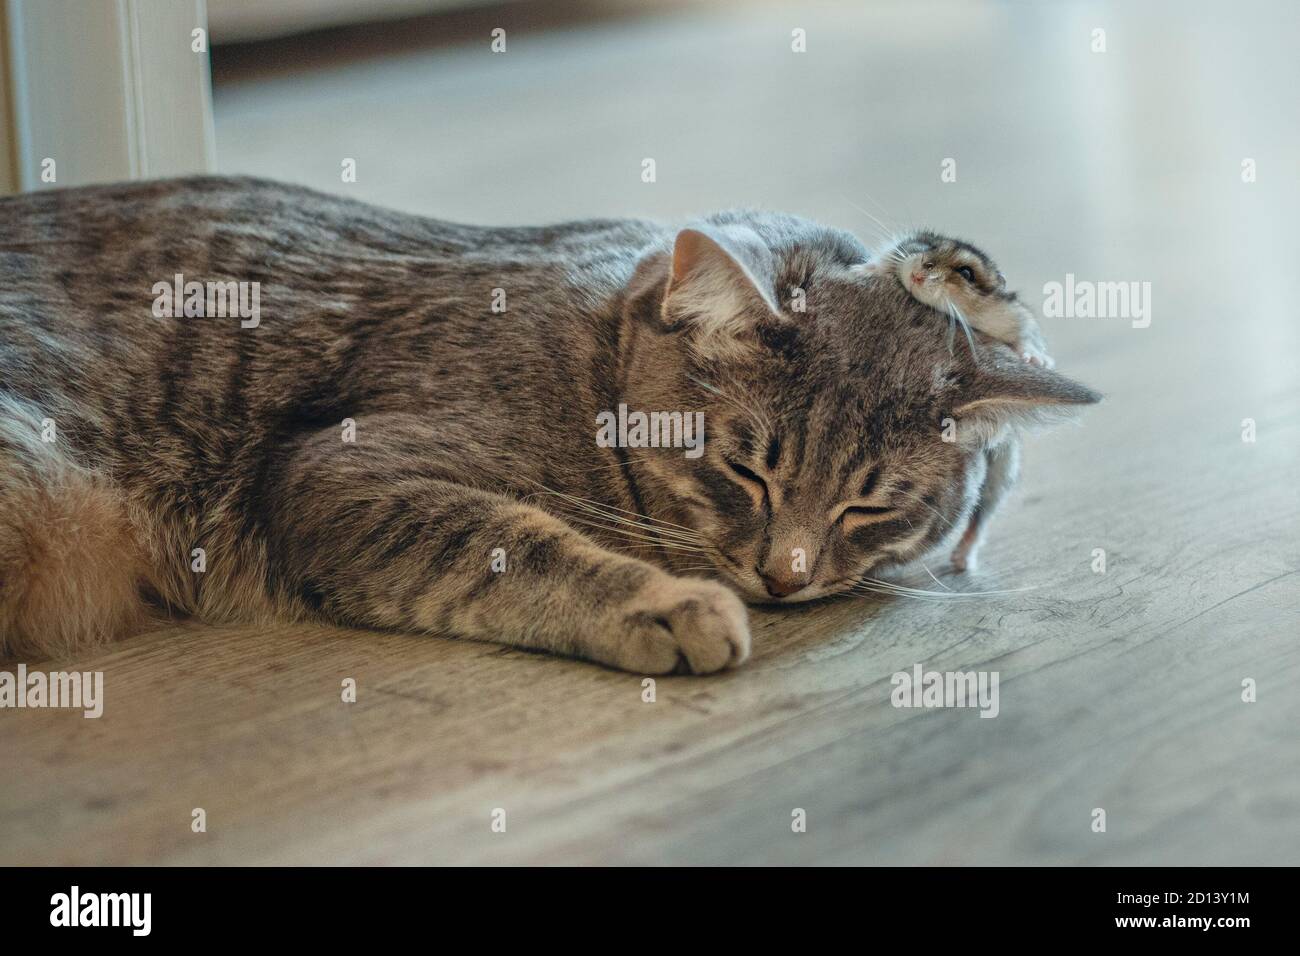 un petit chaton gris dort avec un hamster. Un petit chat dort et un hamster court dessus. Concept amitié. Mise au point douce. Banque D'Images